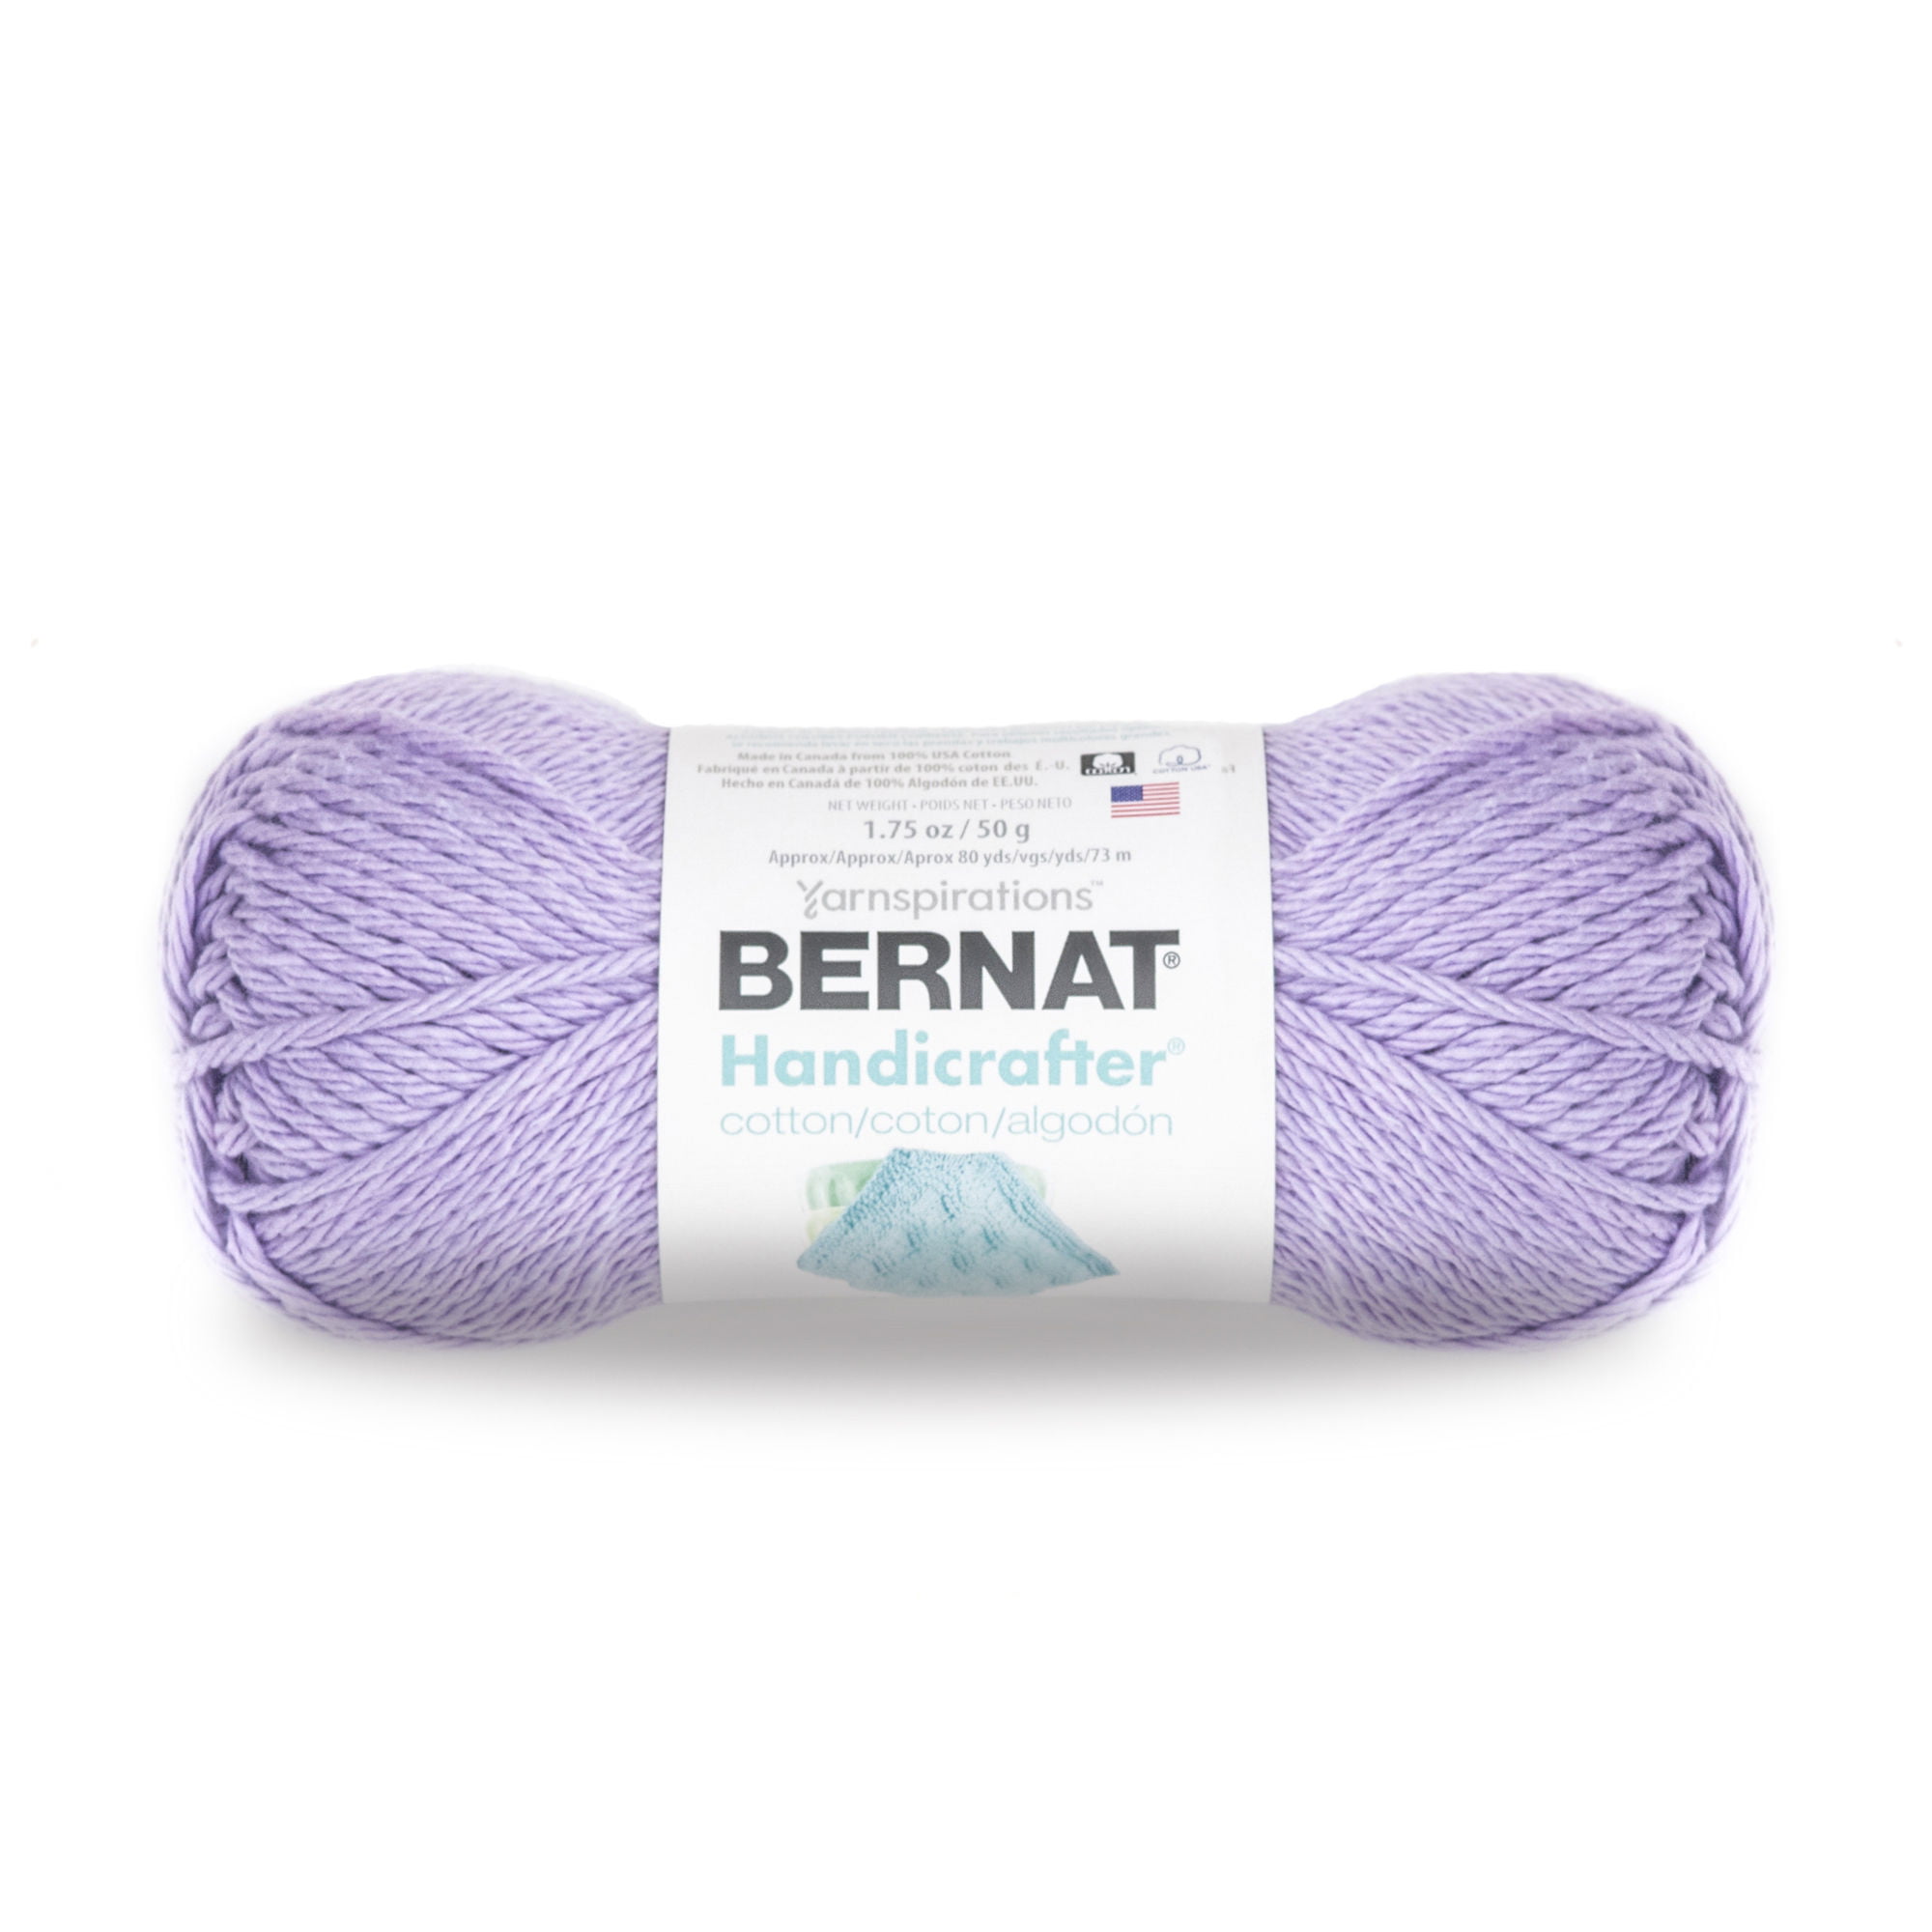 DENIM - Bernat Stripey Handicrafter 100% Cotton is 130 yards / 3